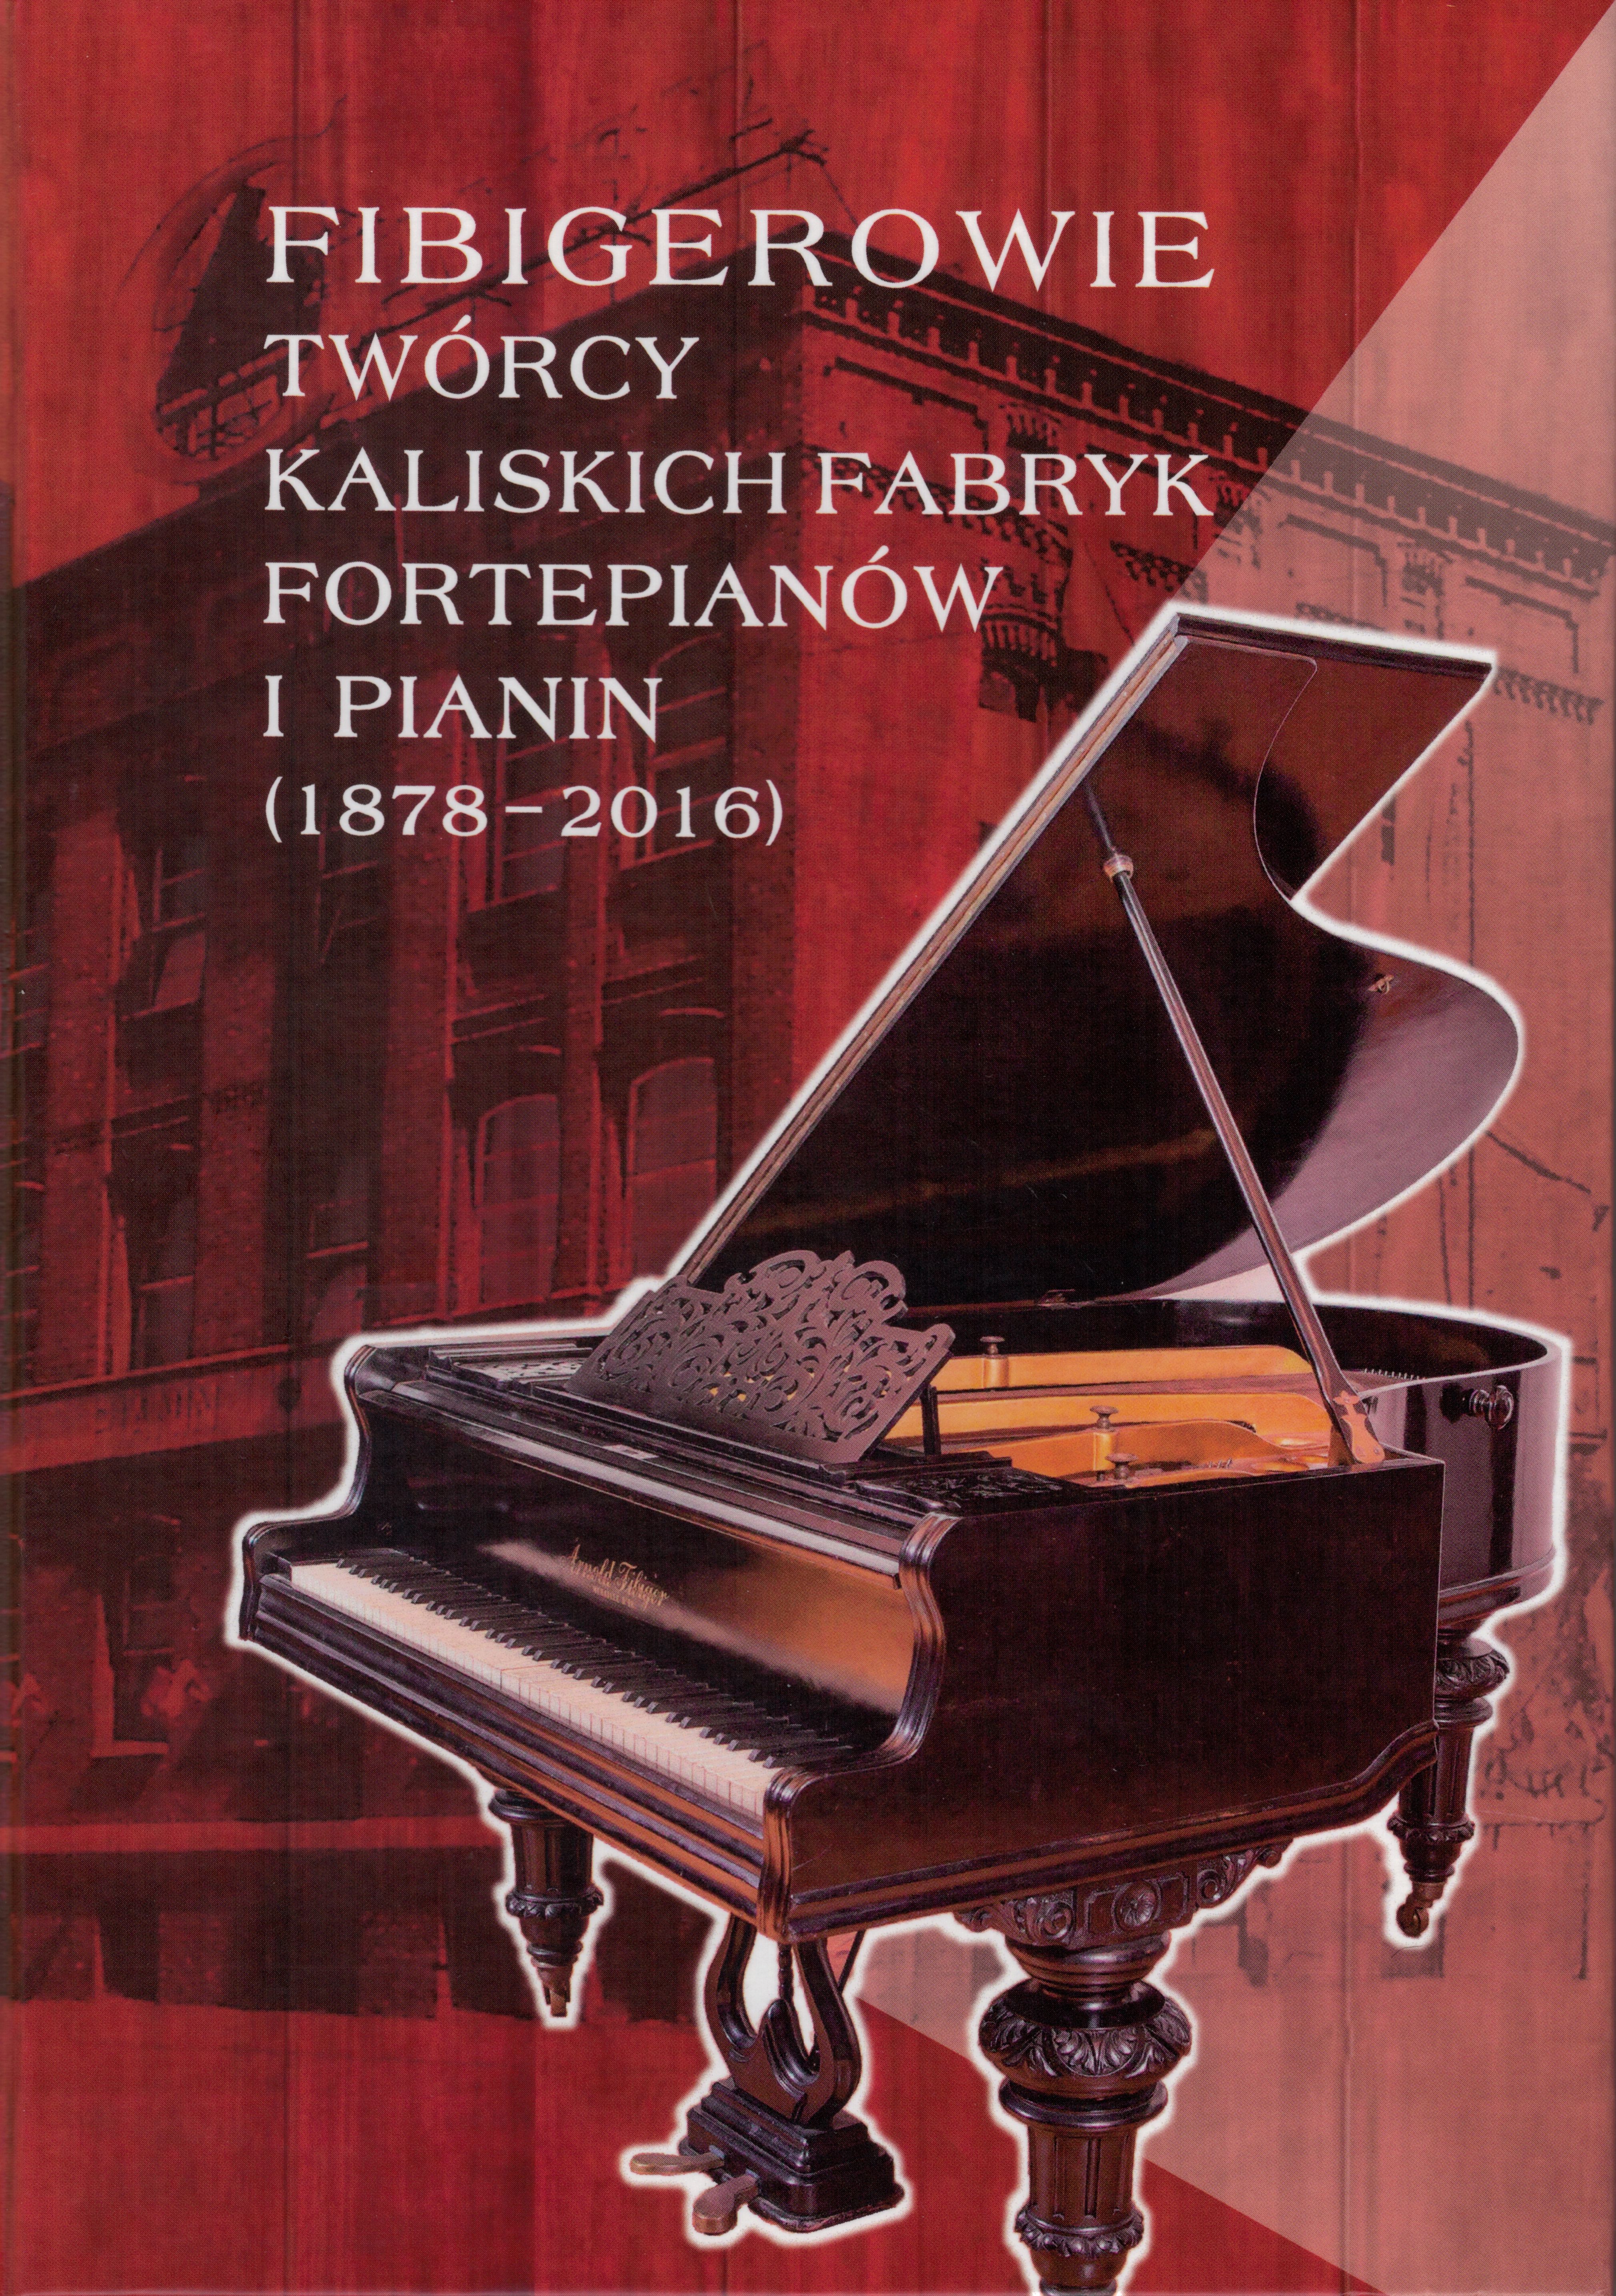 Okładka książki z fortepianem